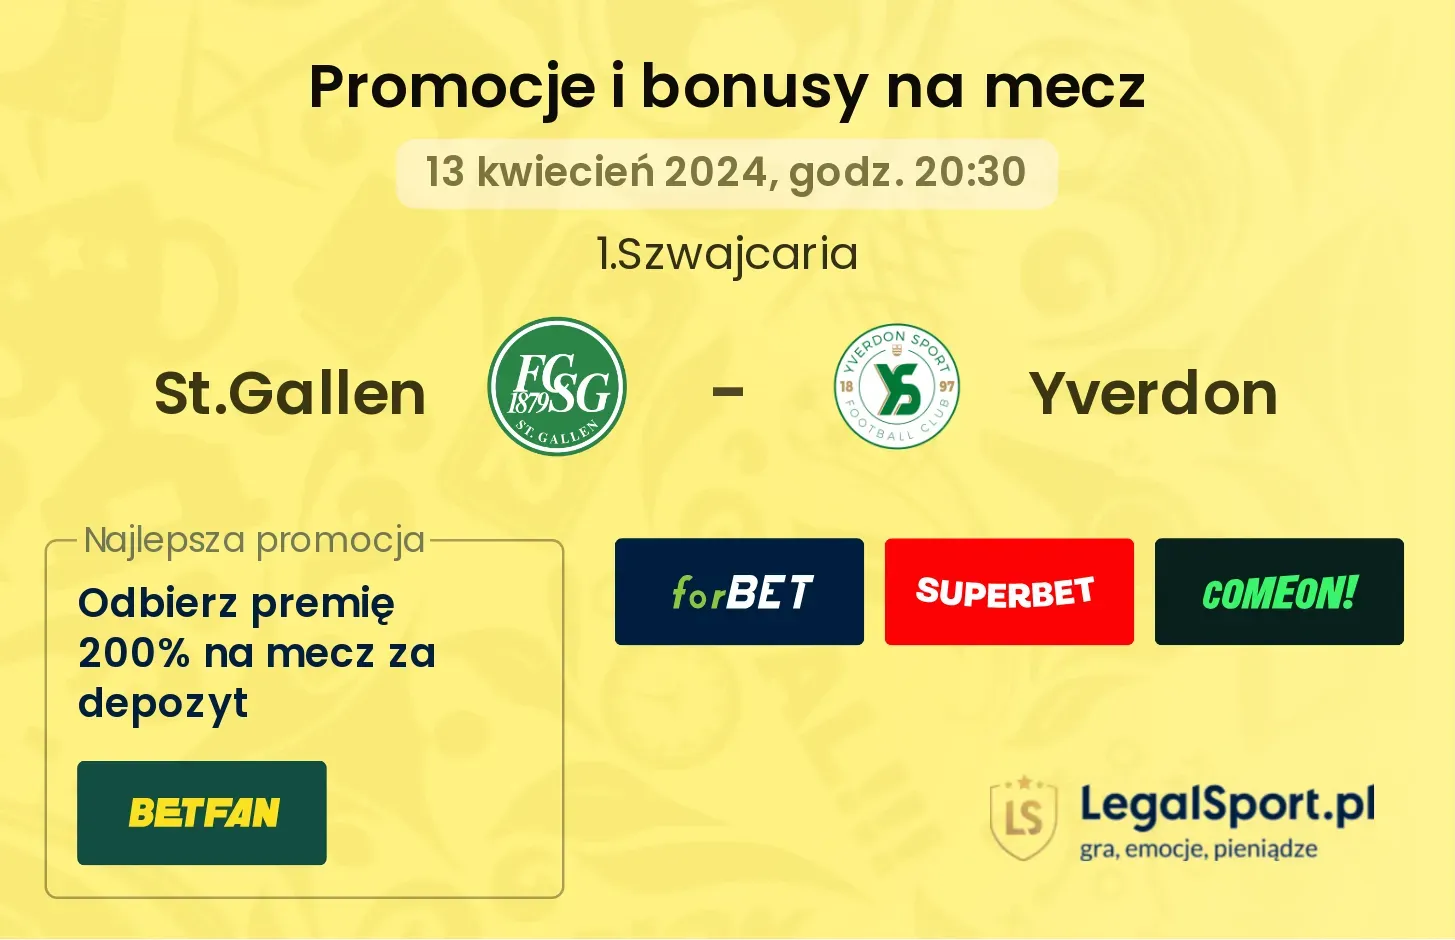 St.Gallen - Yverdon promocje bonusy na mecz